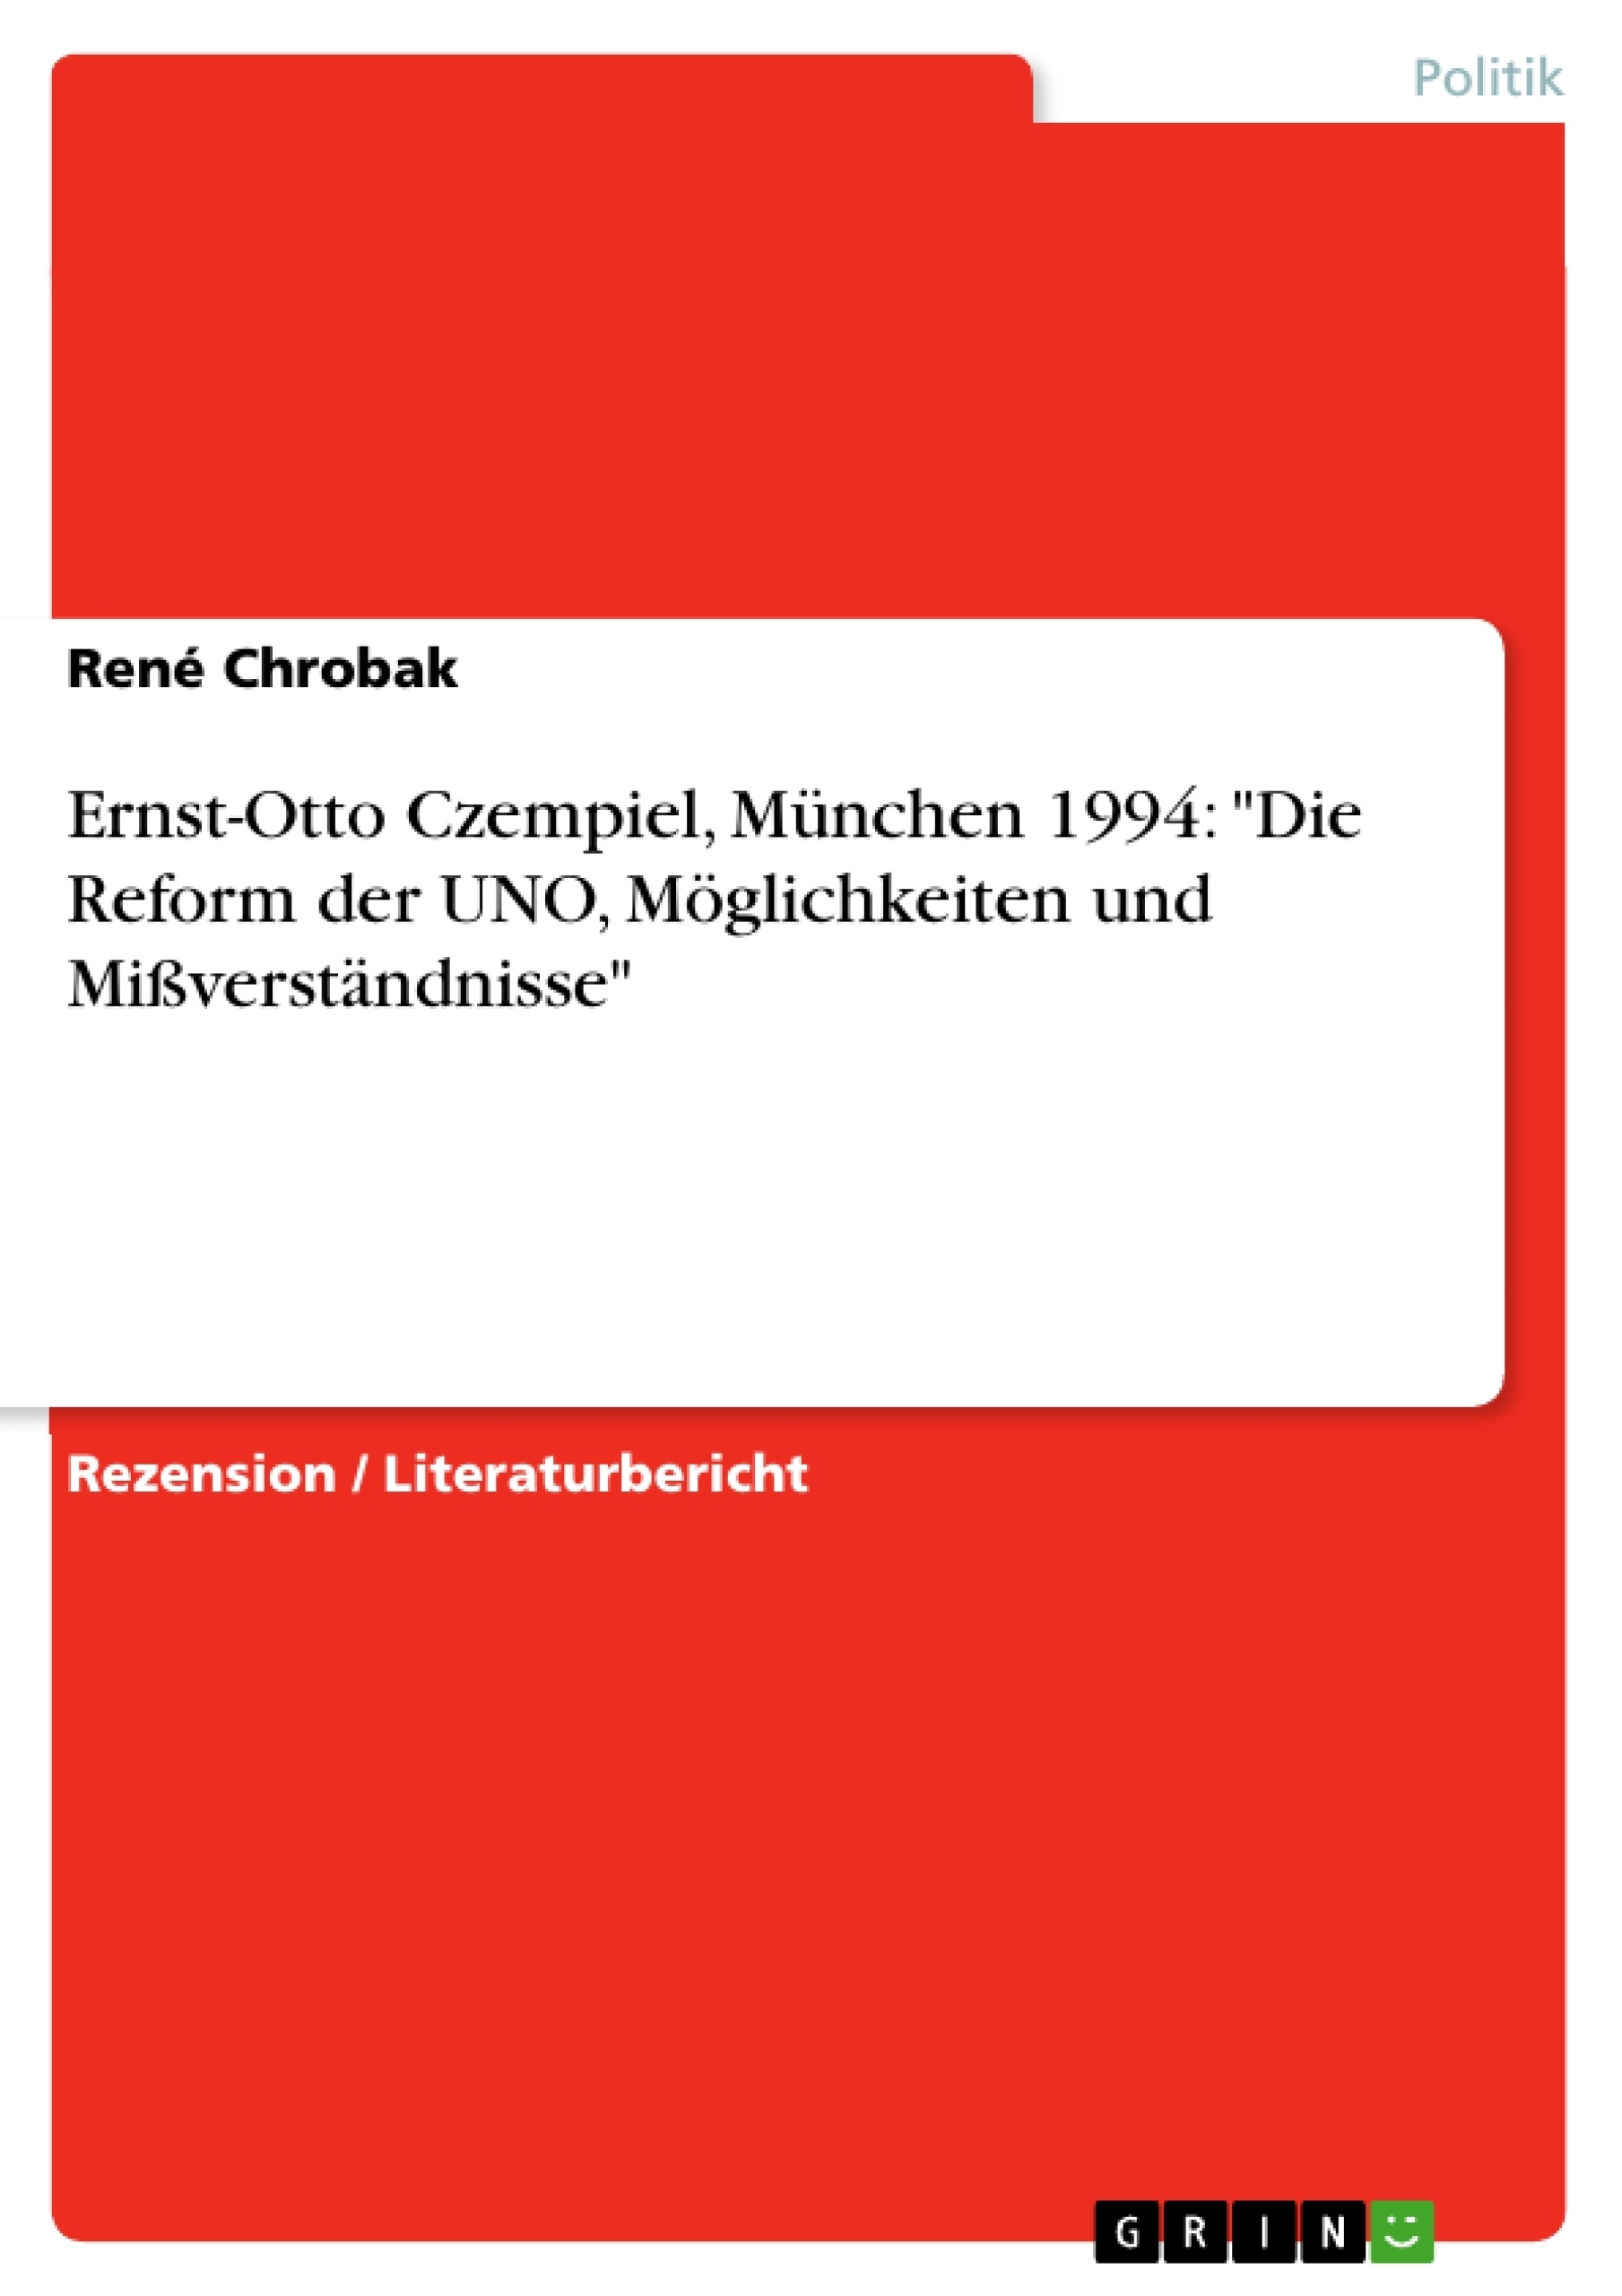 Título: Ernst-Otto Czempiel, München 1994: "Die Reform der UNO, Möglichkeiten und Mißverständnisse"